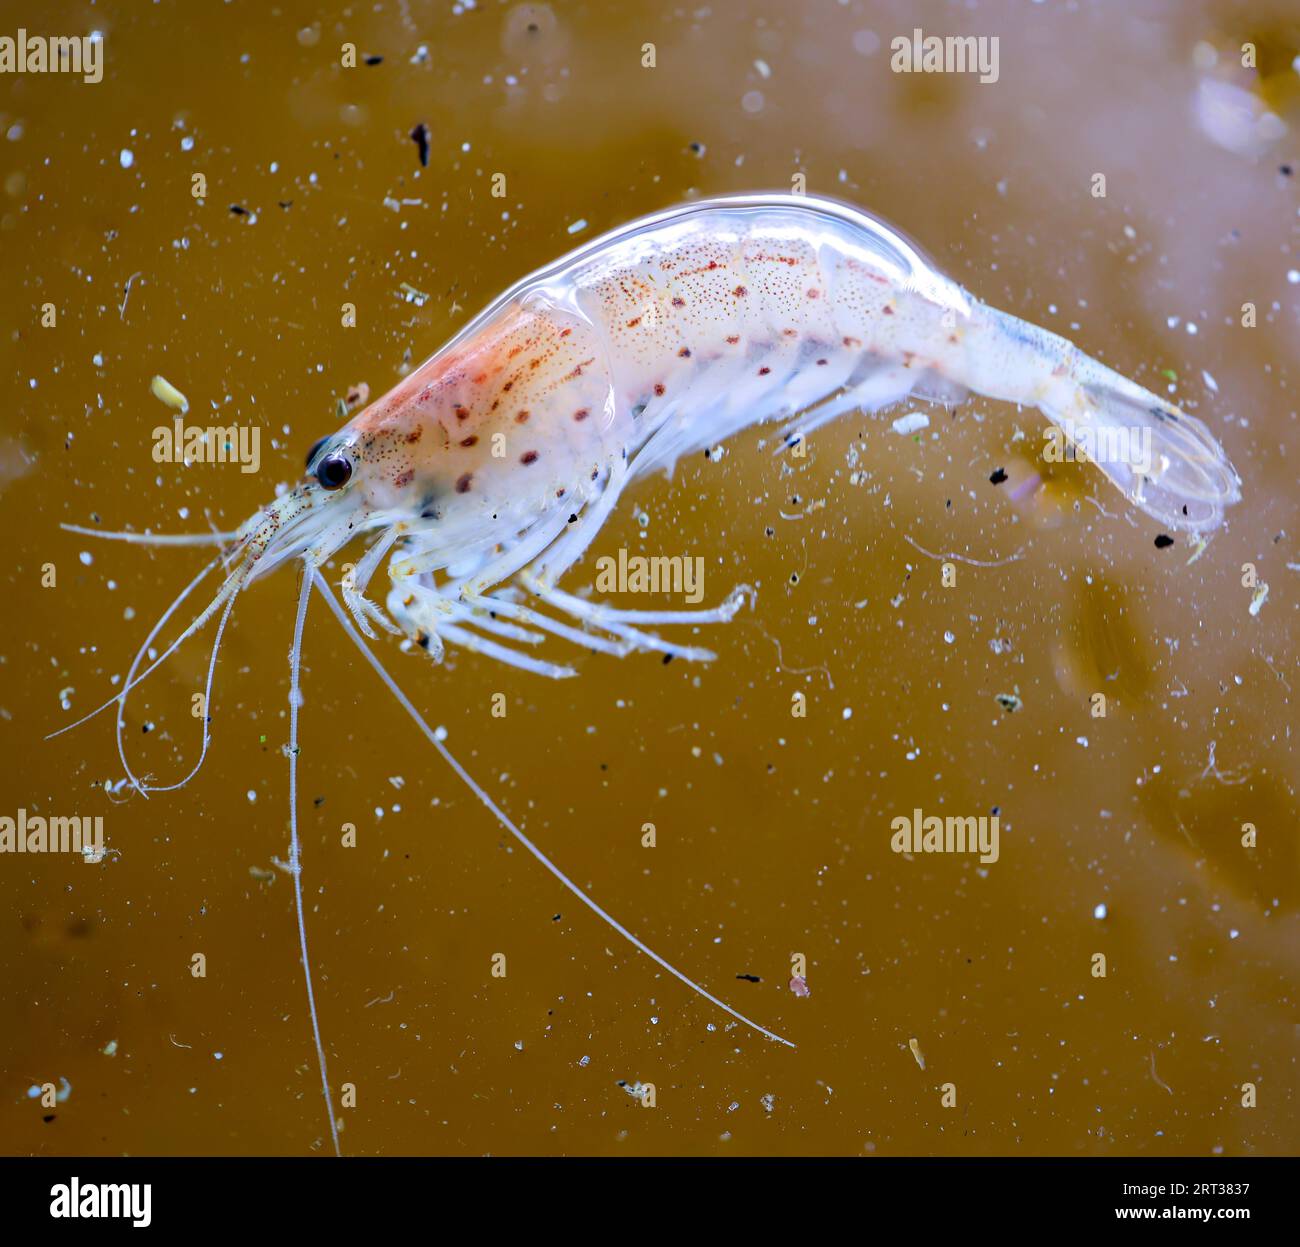 Close-up of an Amano shrimp in an aquarium Stock Photo